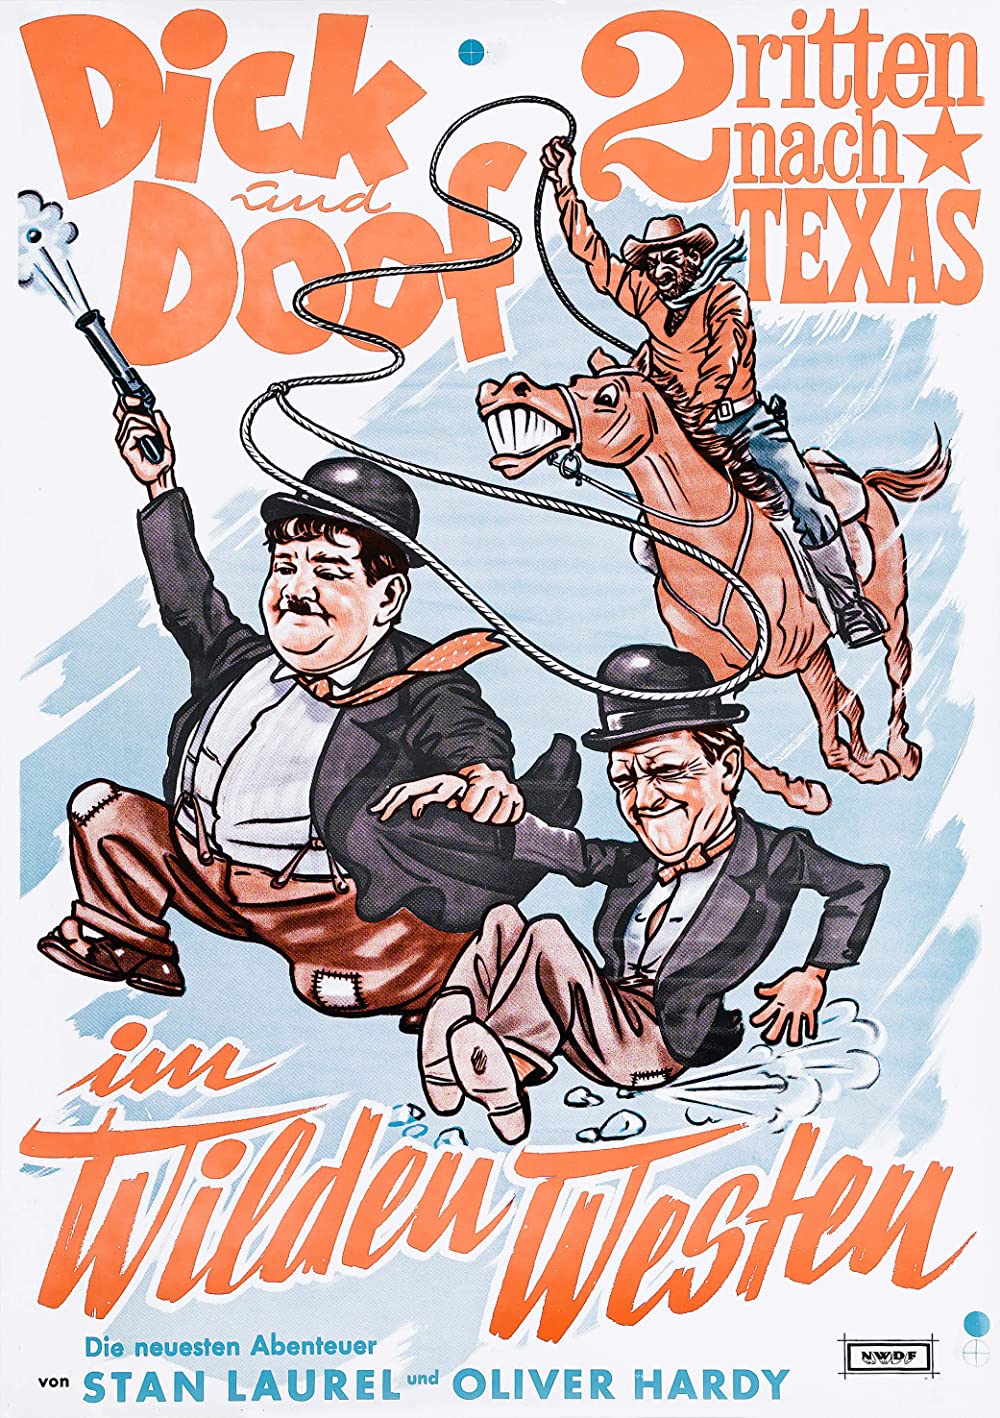 Filmbeschreibung zu Dick und Doof in: Zwei ritten nach Texas